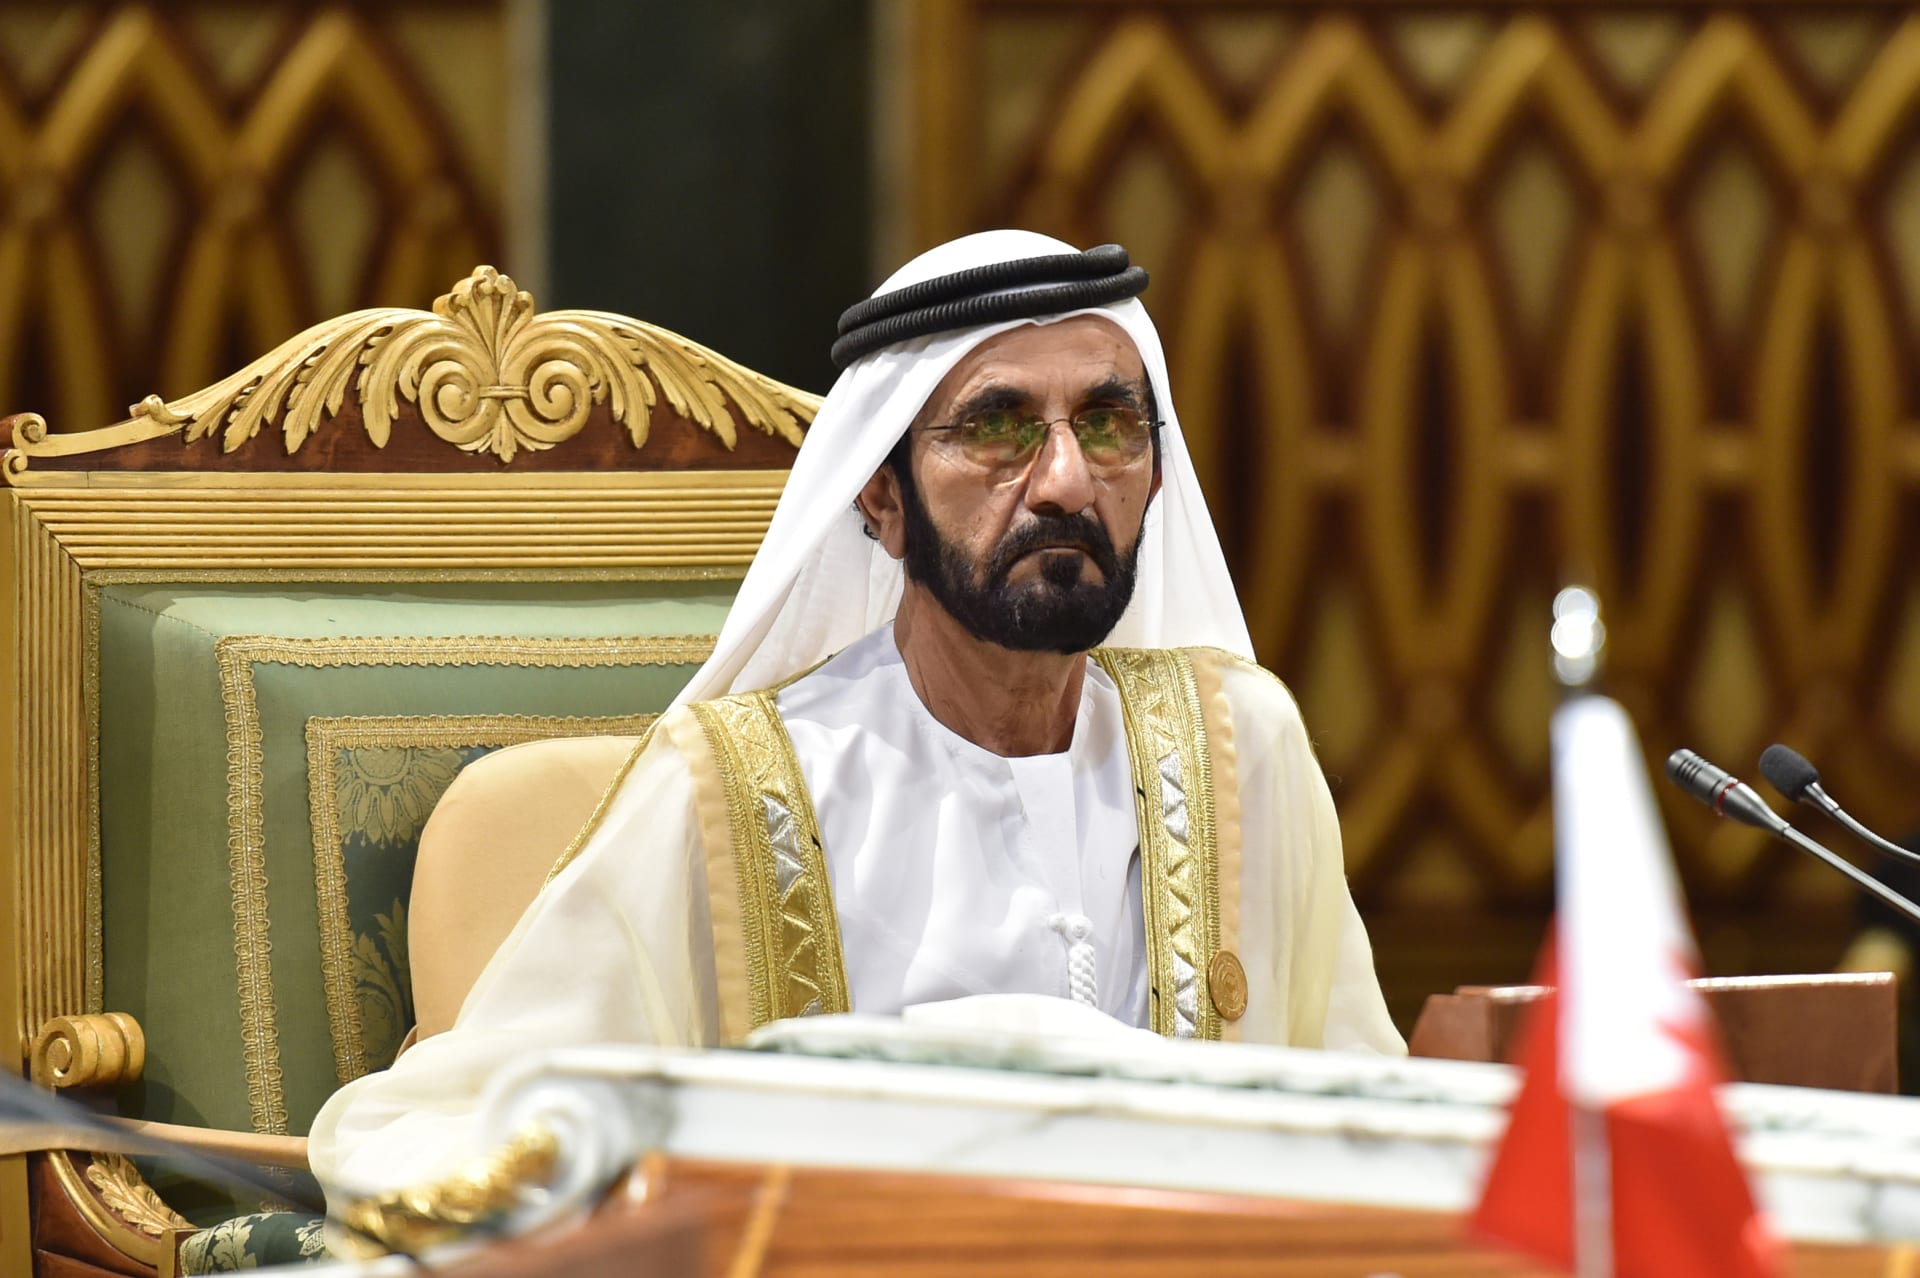  الشيخ محمد بن راشد، نائب رئيس الإمارات رئيس مجلس الوزراء حاكم دبي